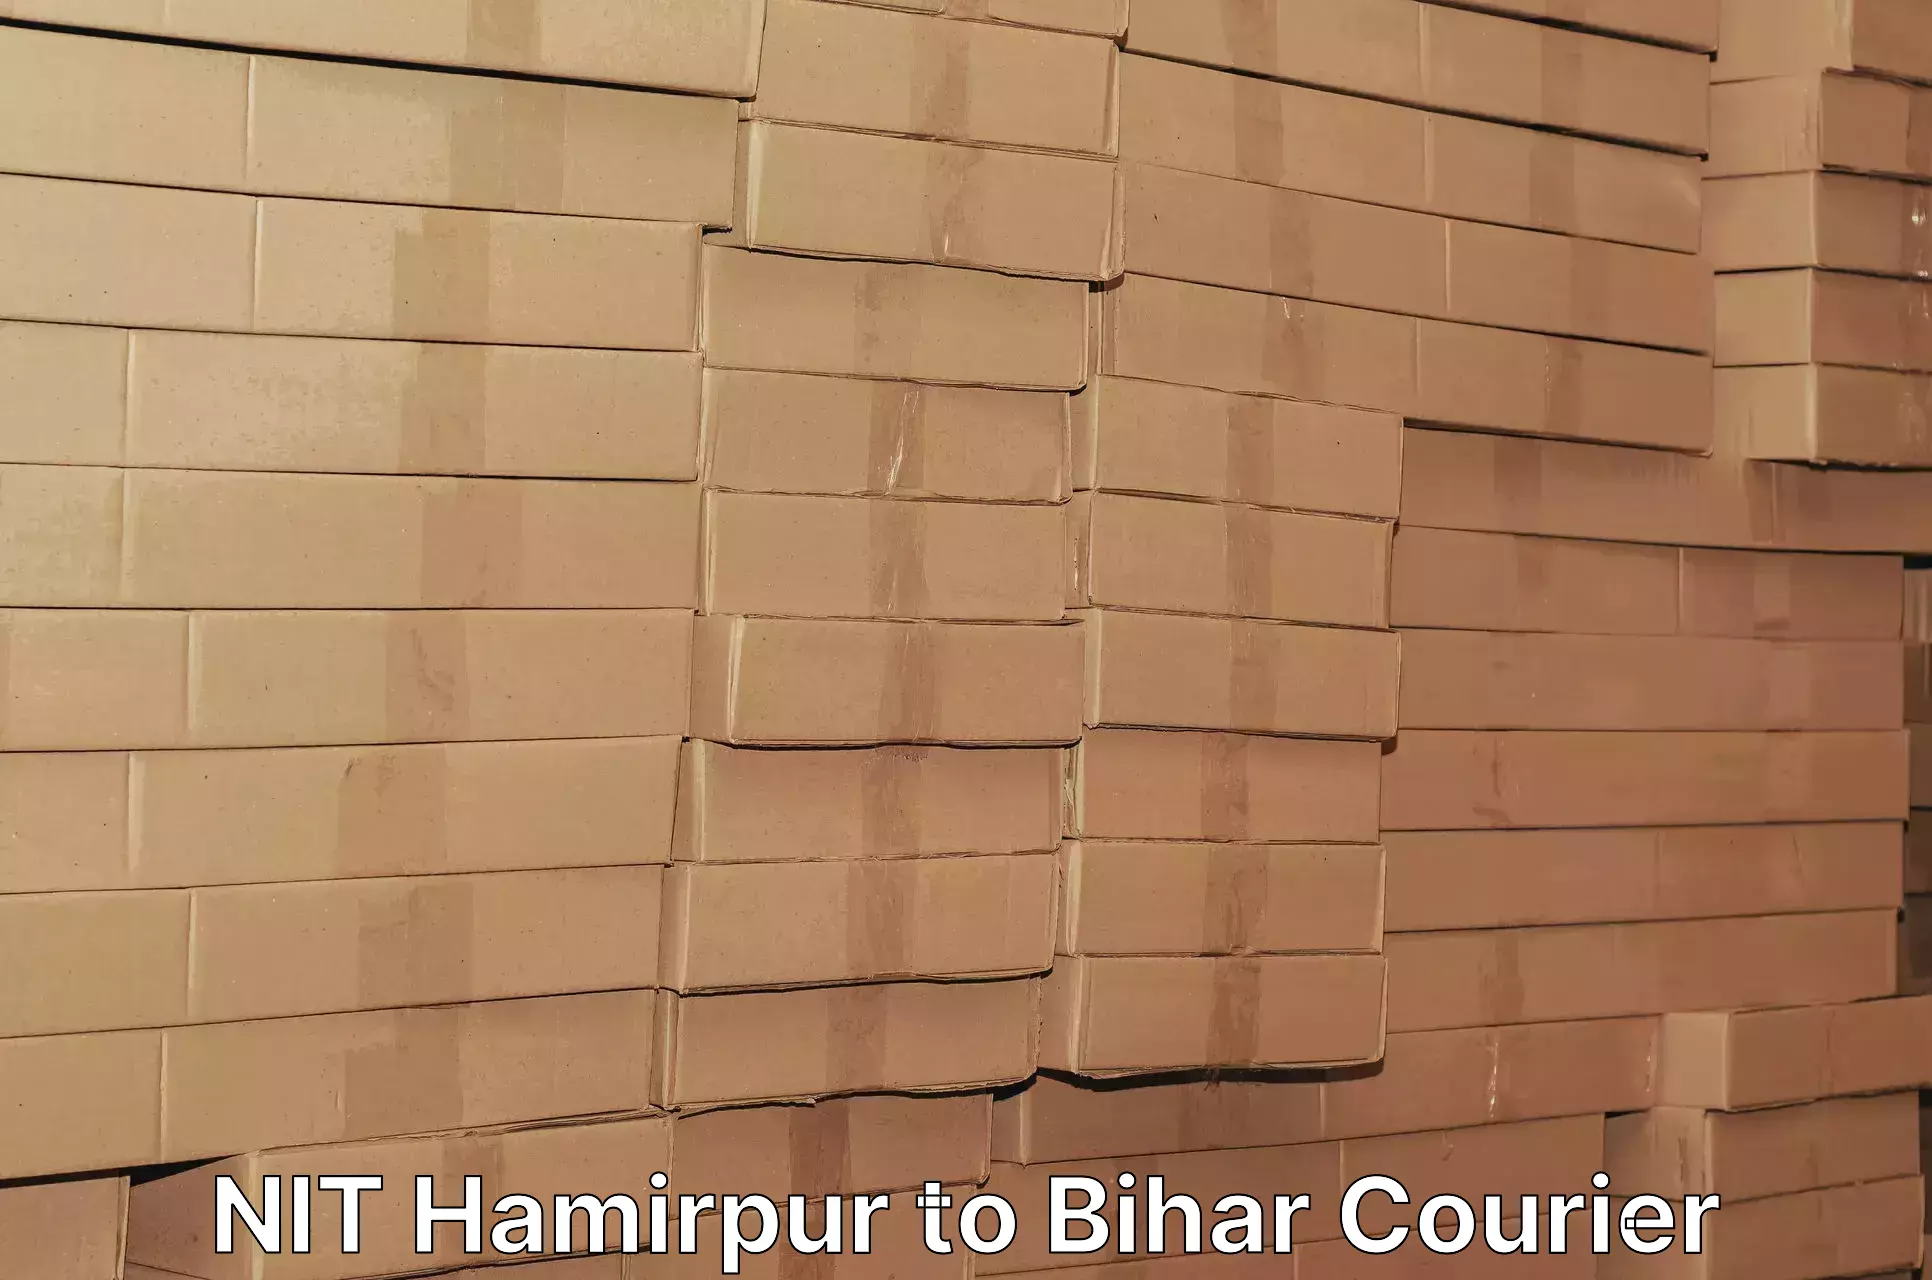 High-capacity parcel service NIT Hamirpur to Bahadurganj